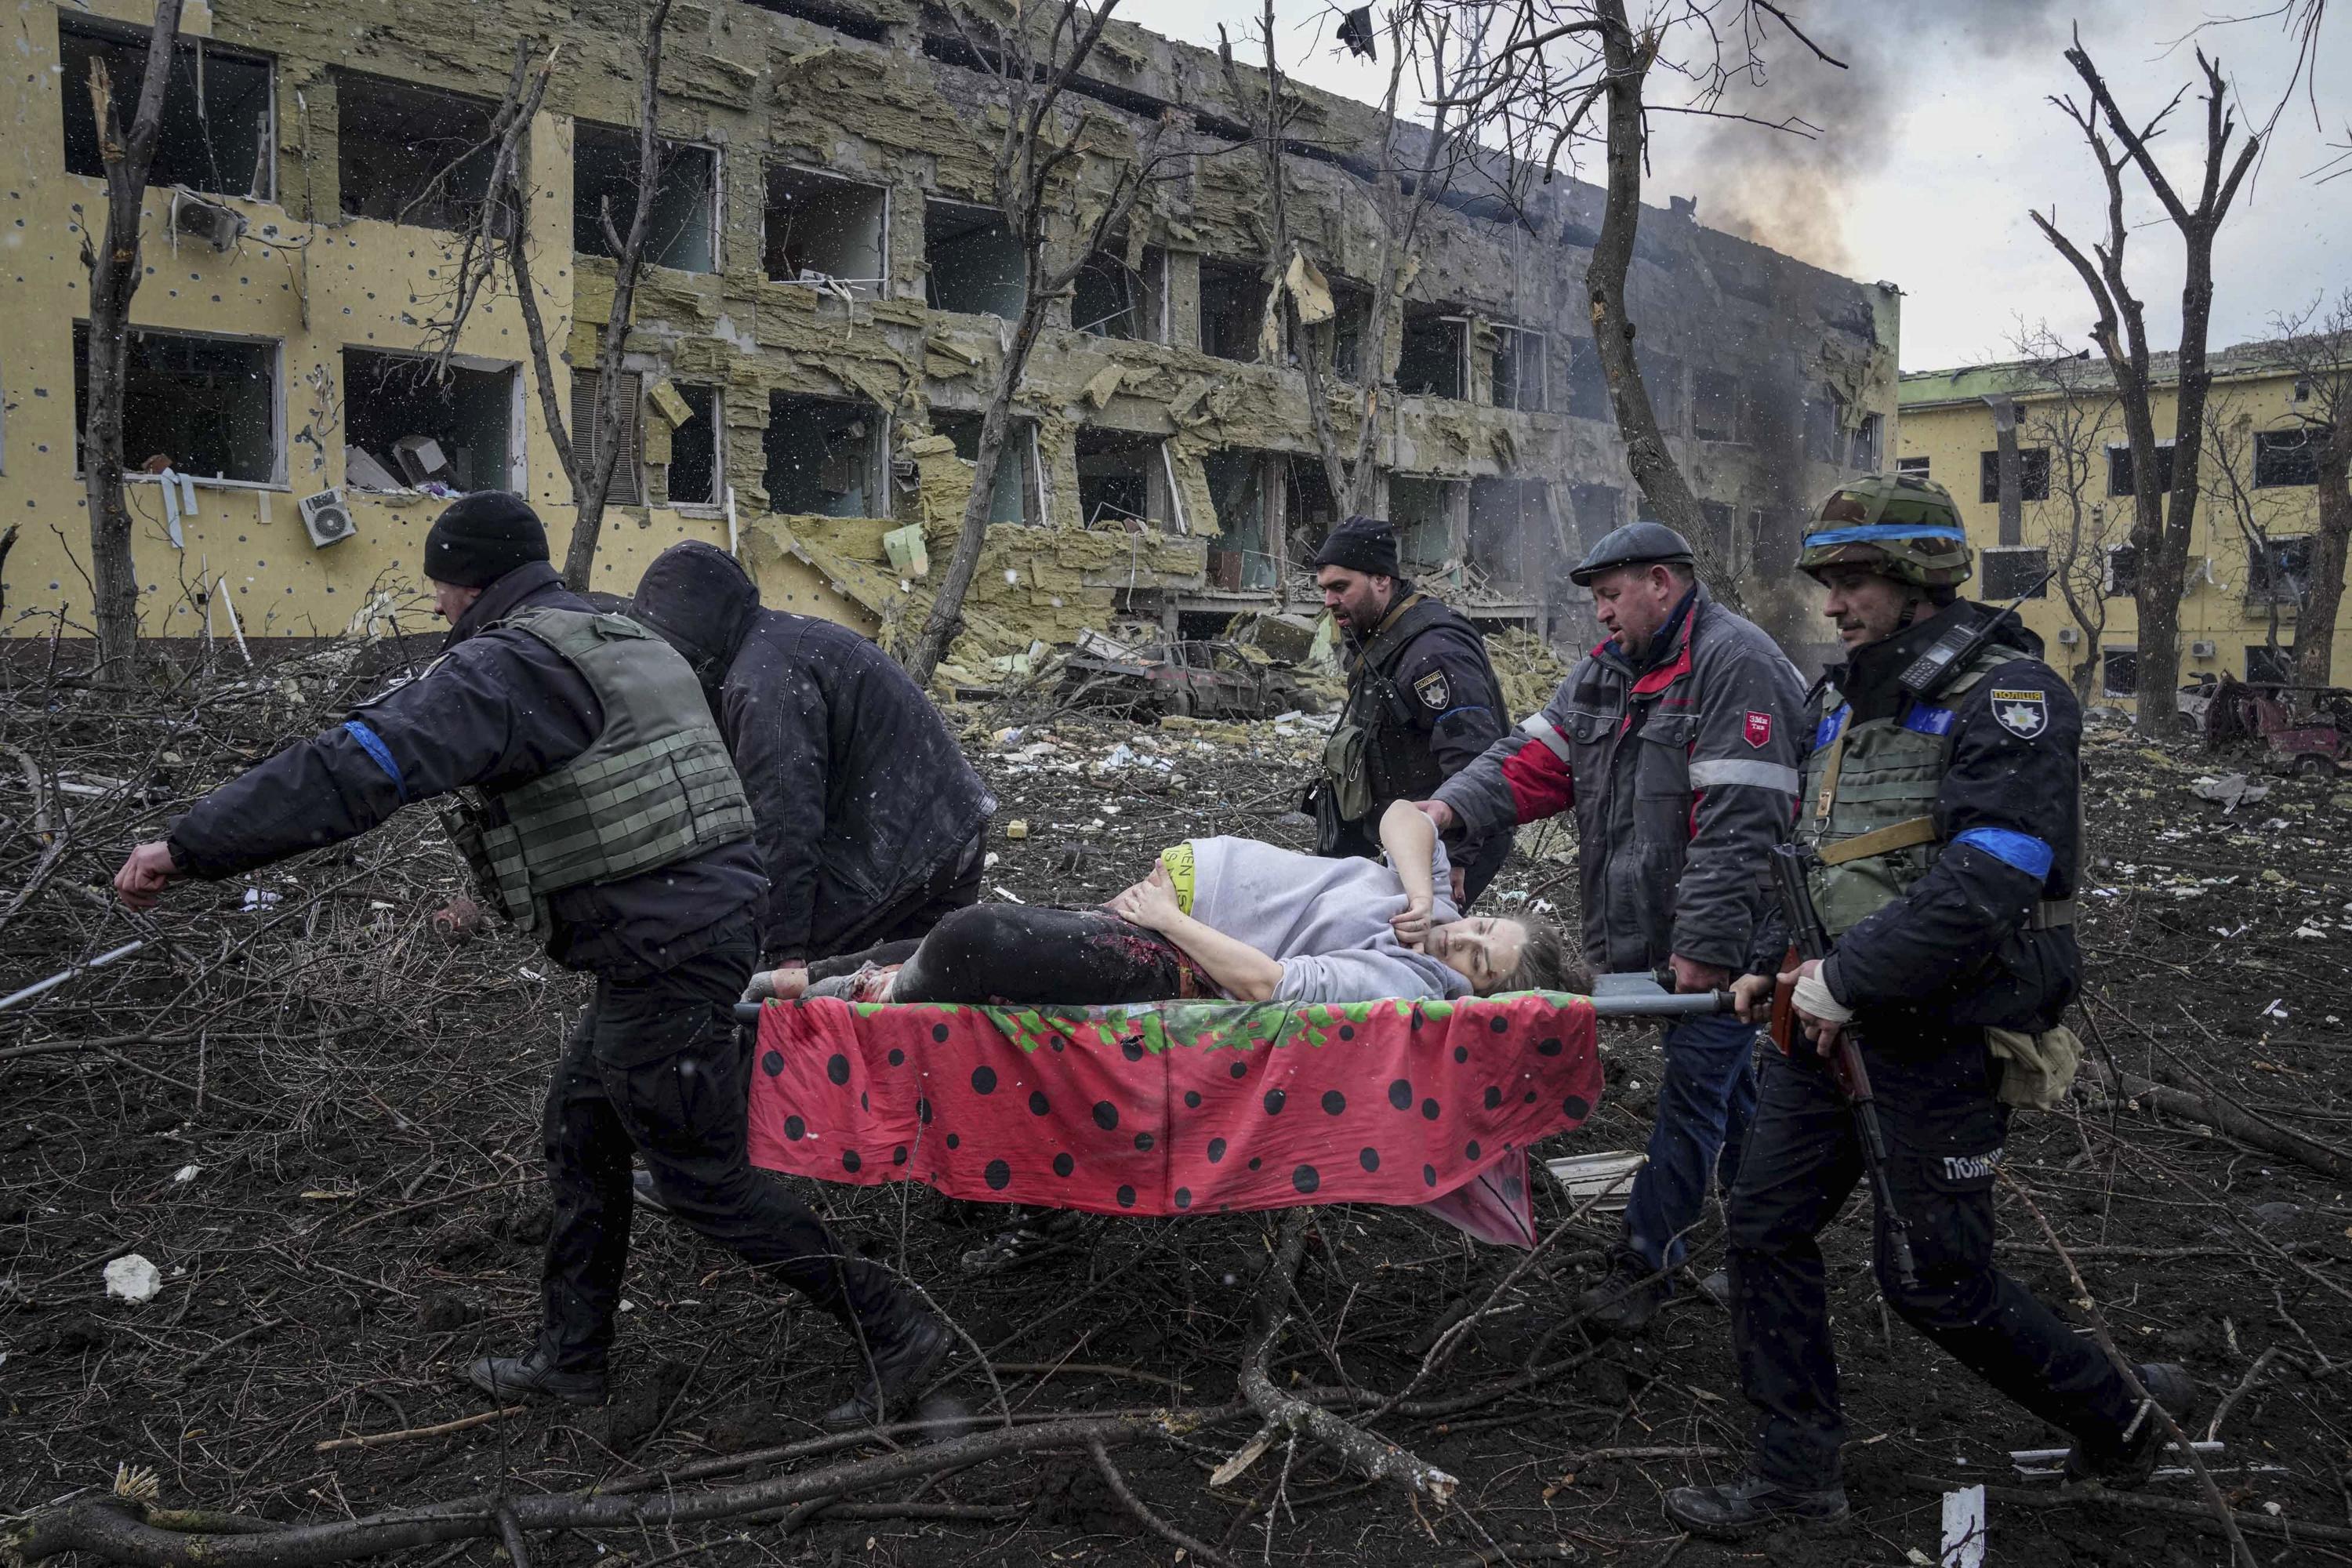 ZDJĘCIA AP: Dokumentuje inwazję Rosji na Ukrainę